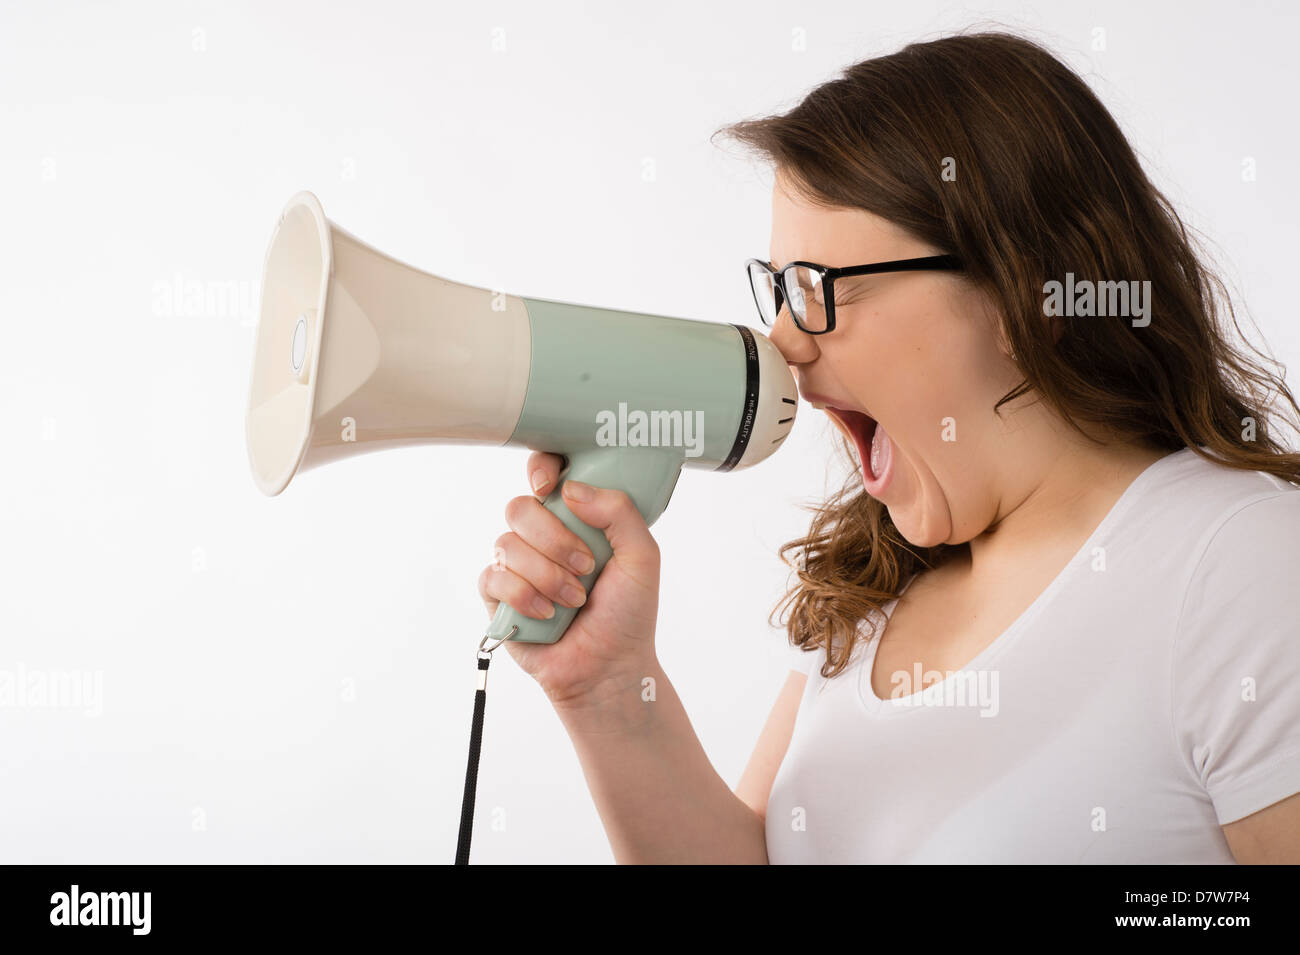 Une jeune brunette young Caucasian girl criant dans un mégaphone corne de taureau portant des lunettes hurler crier uk Banque D'Images